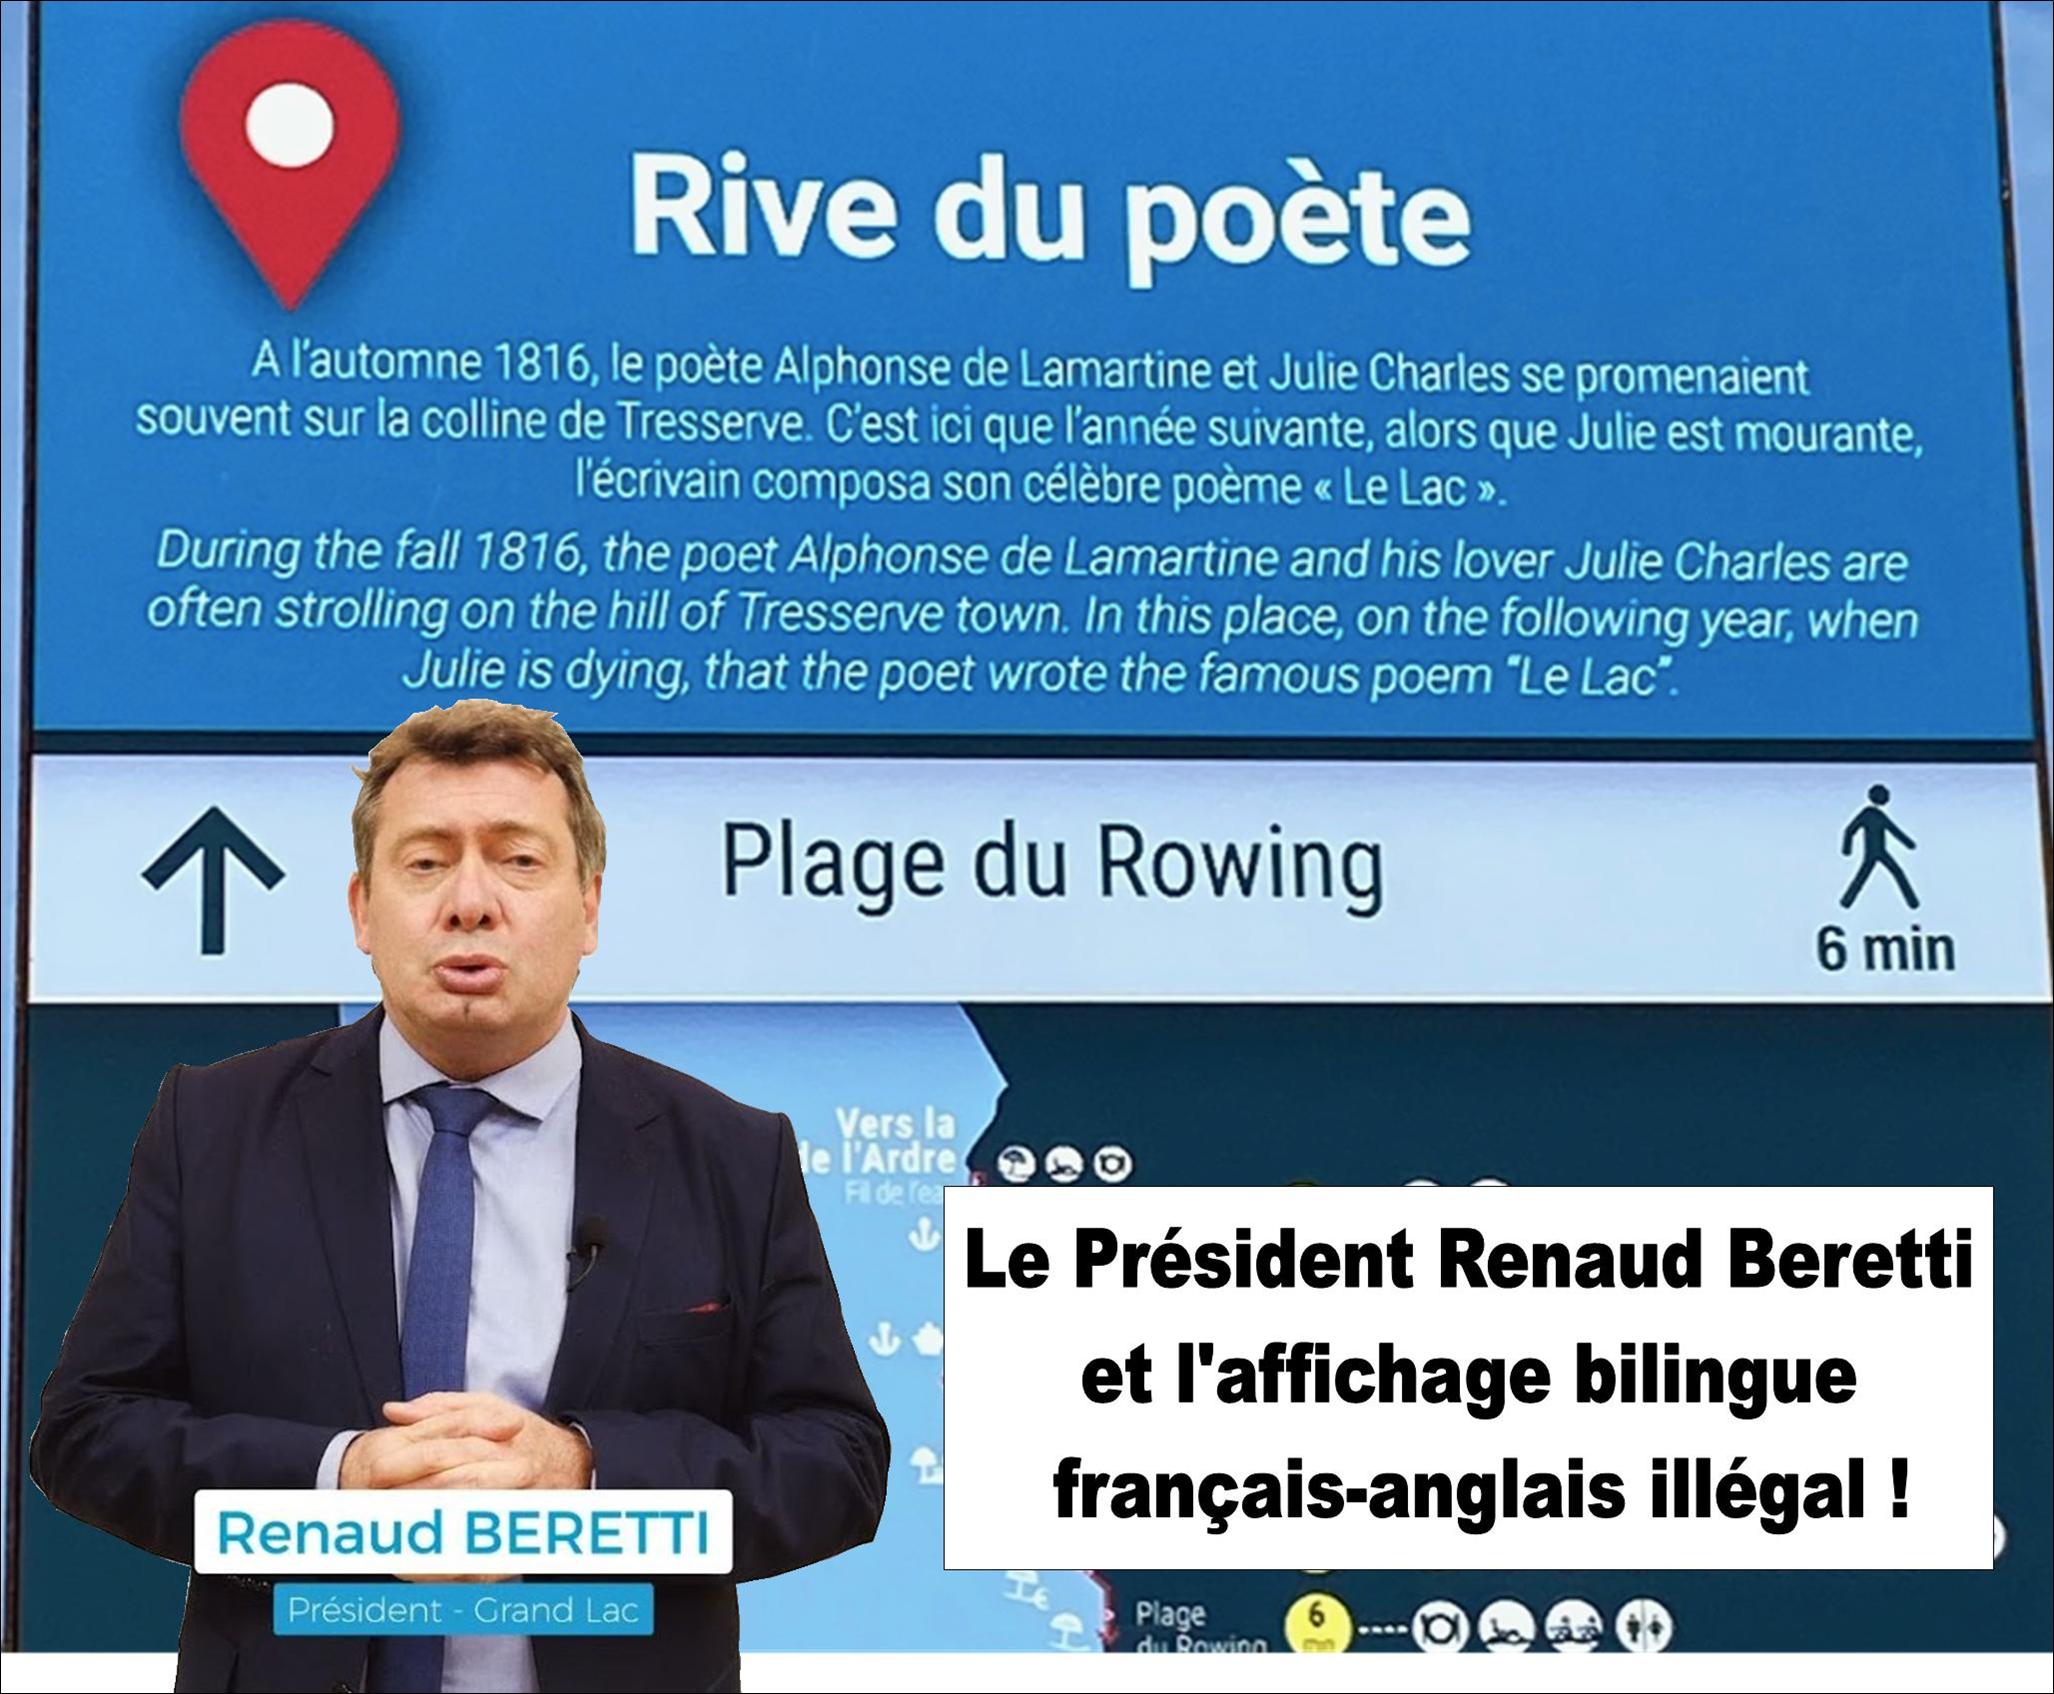 Renaud Beretti et l'affichage bilingue français-anglais illegal